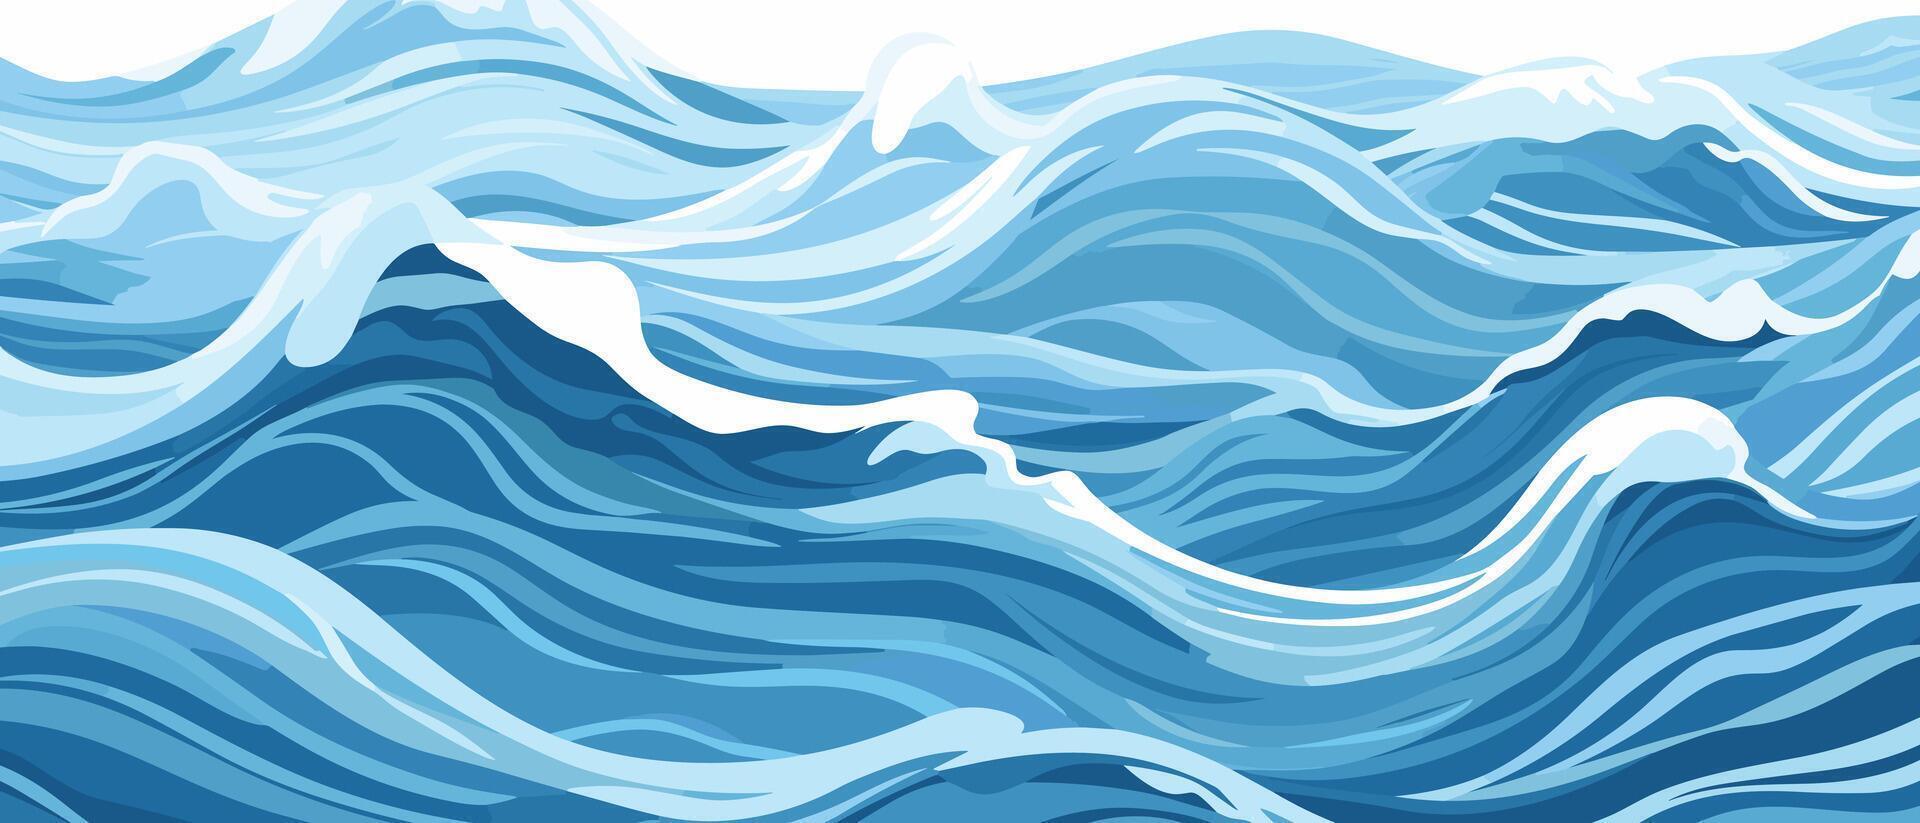 bleu ondulations et l'eau éclaboussures vagues surface plat style conception vecteur illustration.